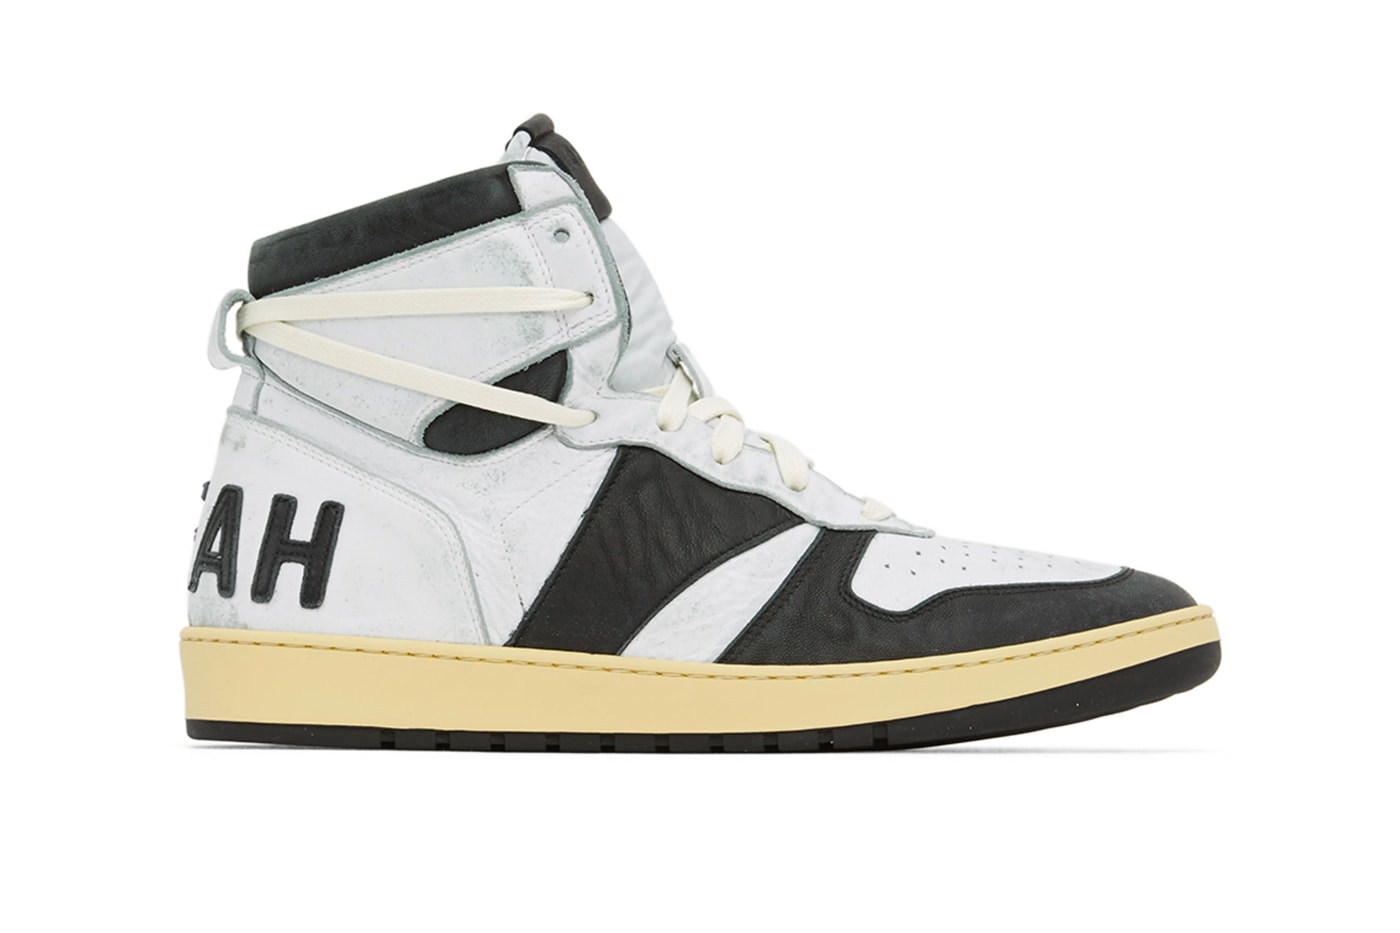 RHUDE Rhecess-Hi Hell Yeah Sneakers Black White Release